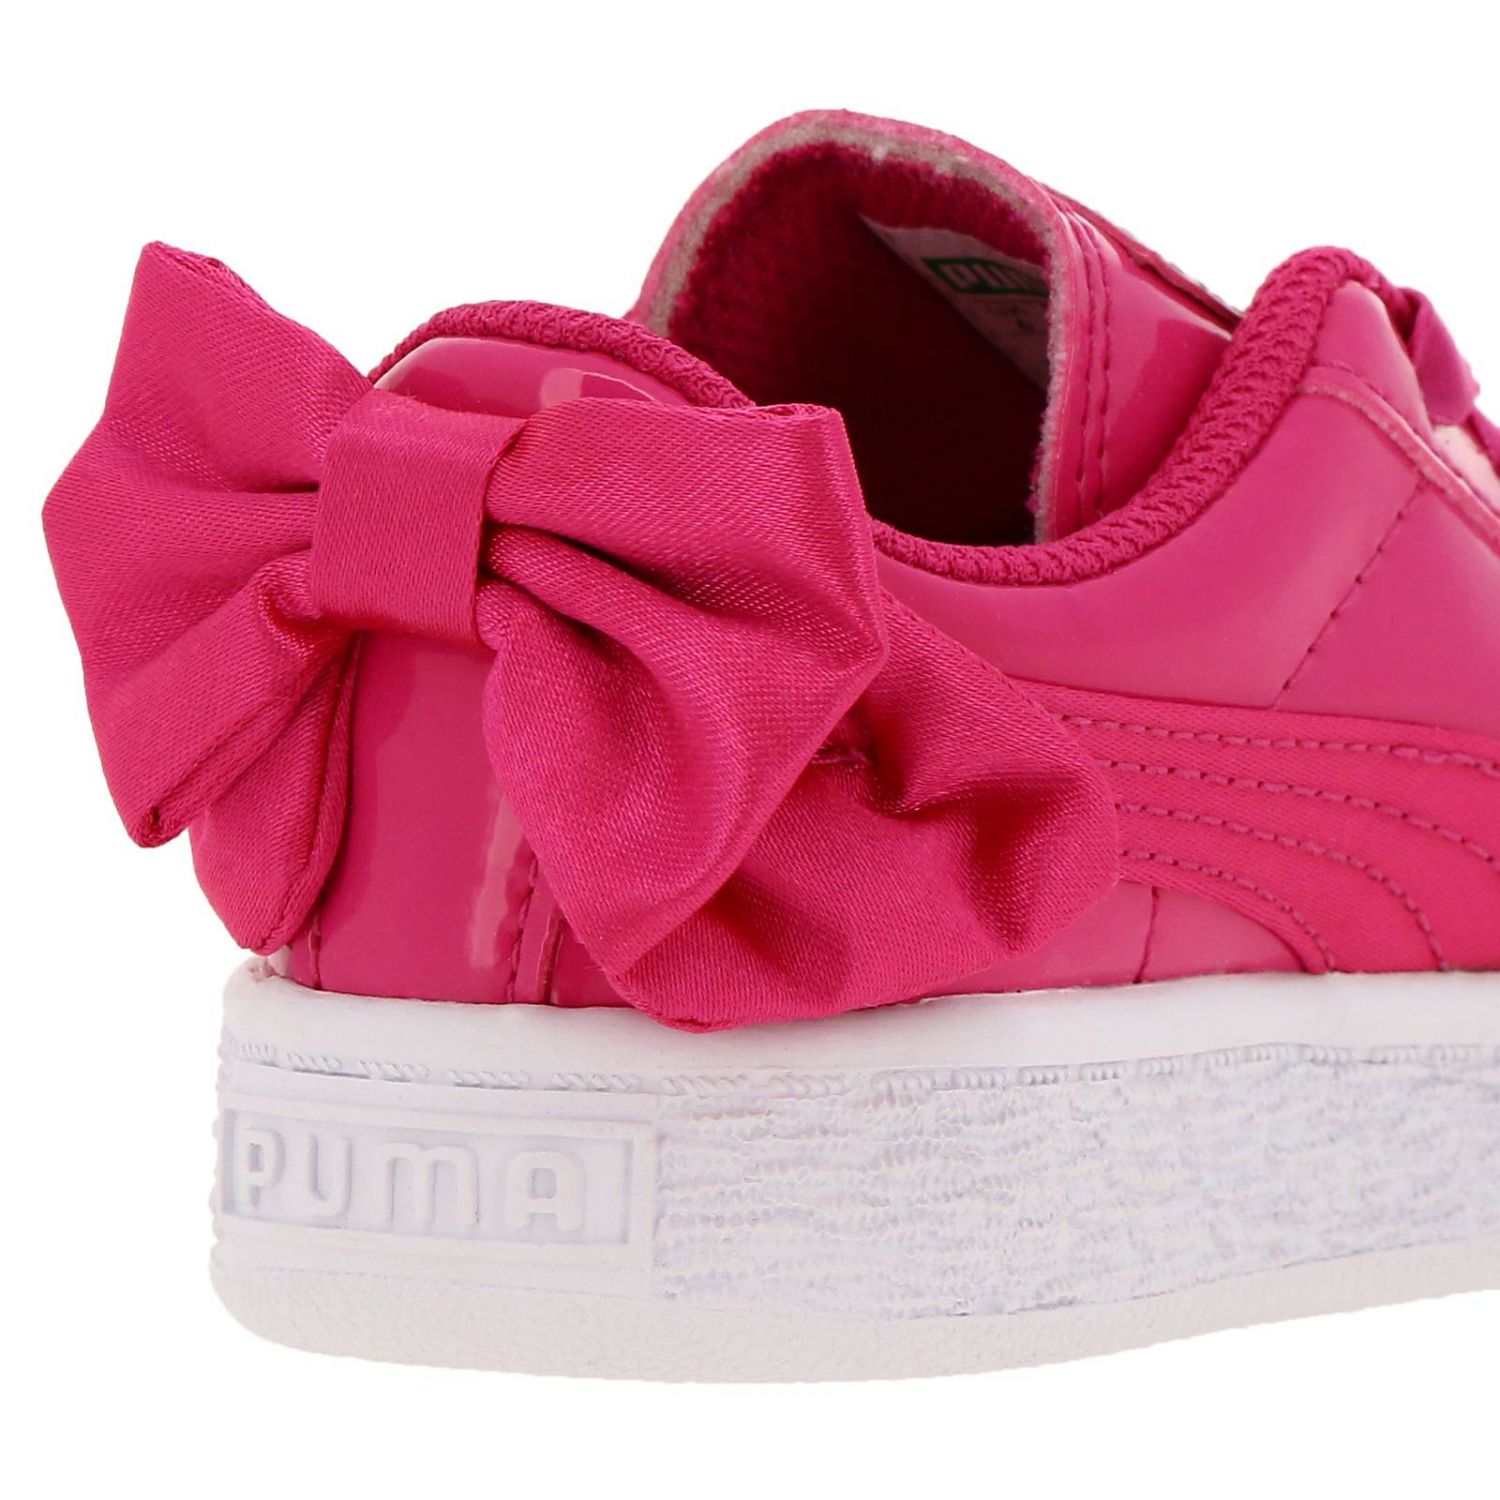 Puma Outlet: Sneakers Basket bow in vernice e raso con maxi fiocco | Scarpe  Puma Bambino Fuxia | Scarpe Puma 368986 GIGLIO.COM